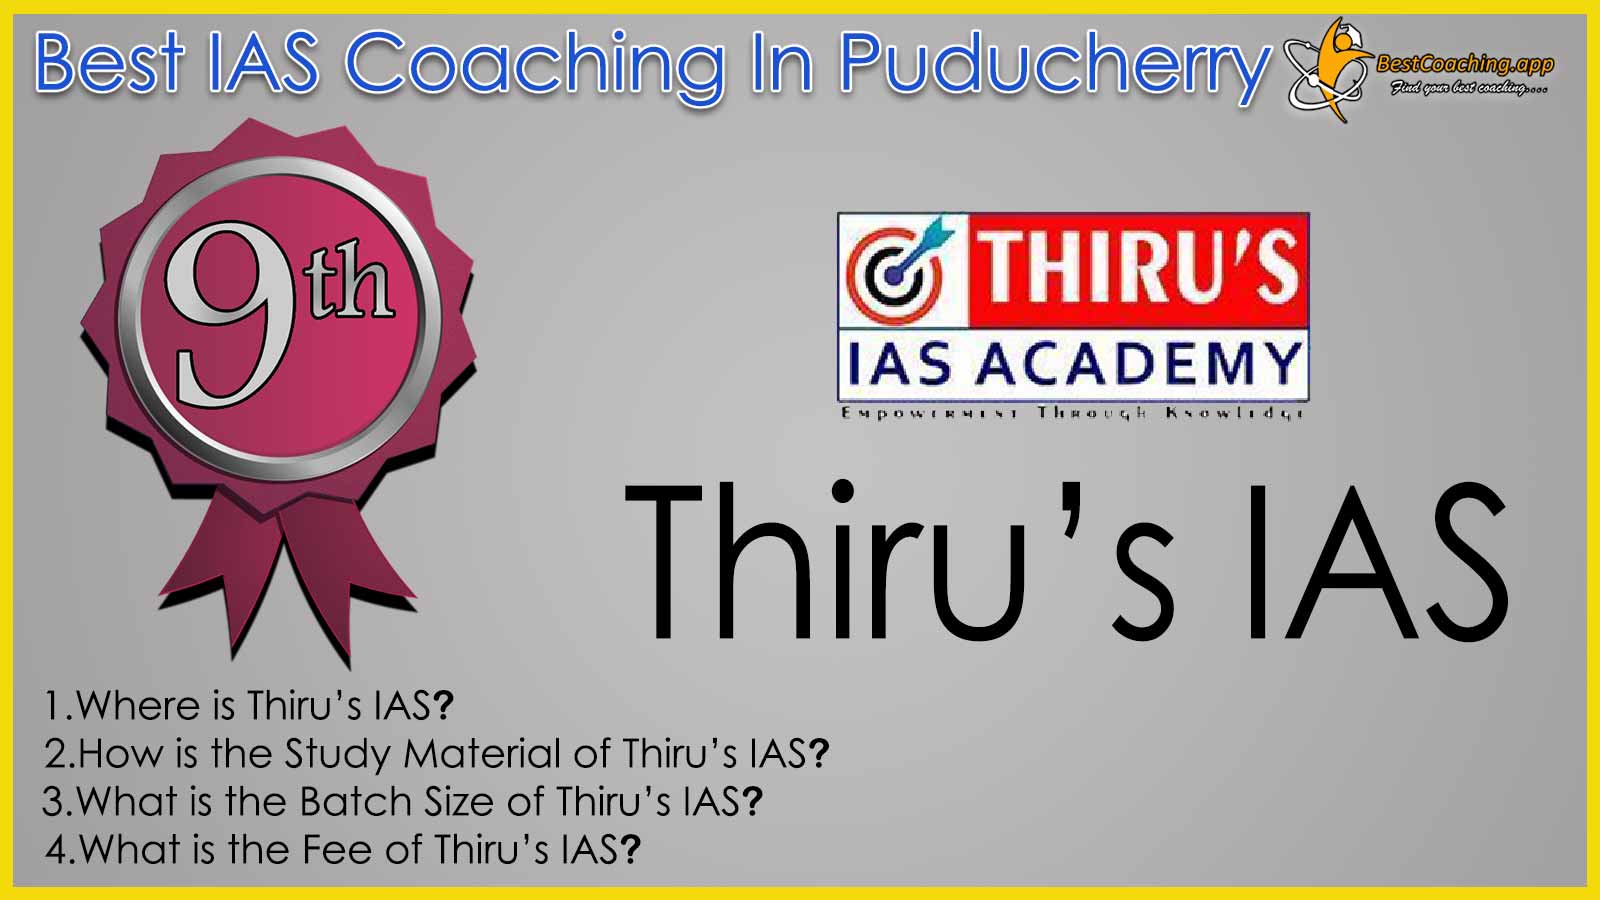 Thiru's IAS Coaching